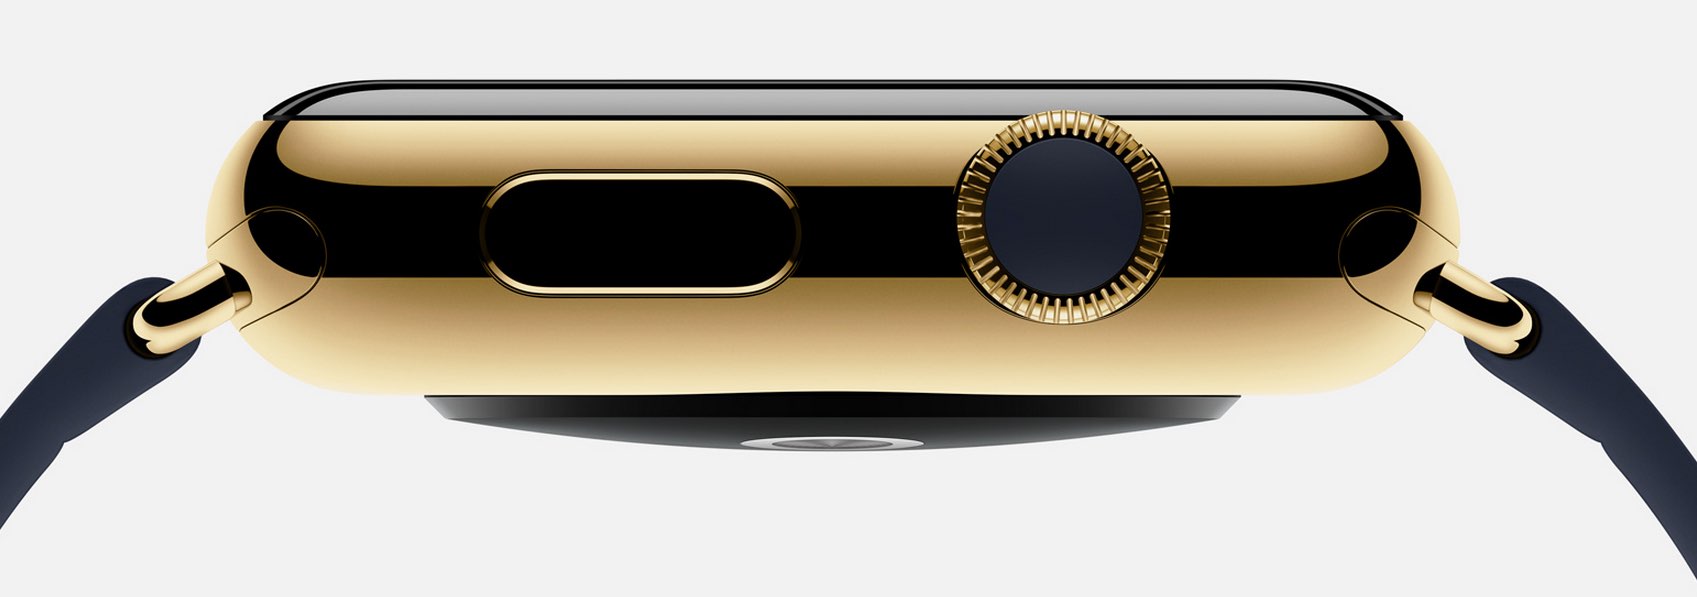 Goldene Apple Watch stellt Apple Stores vor neue Herausforderungen 1